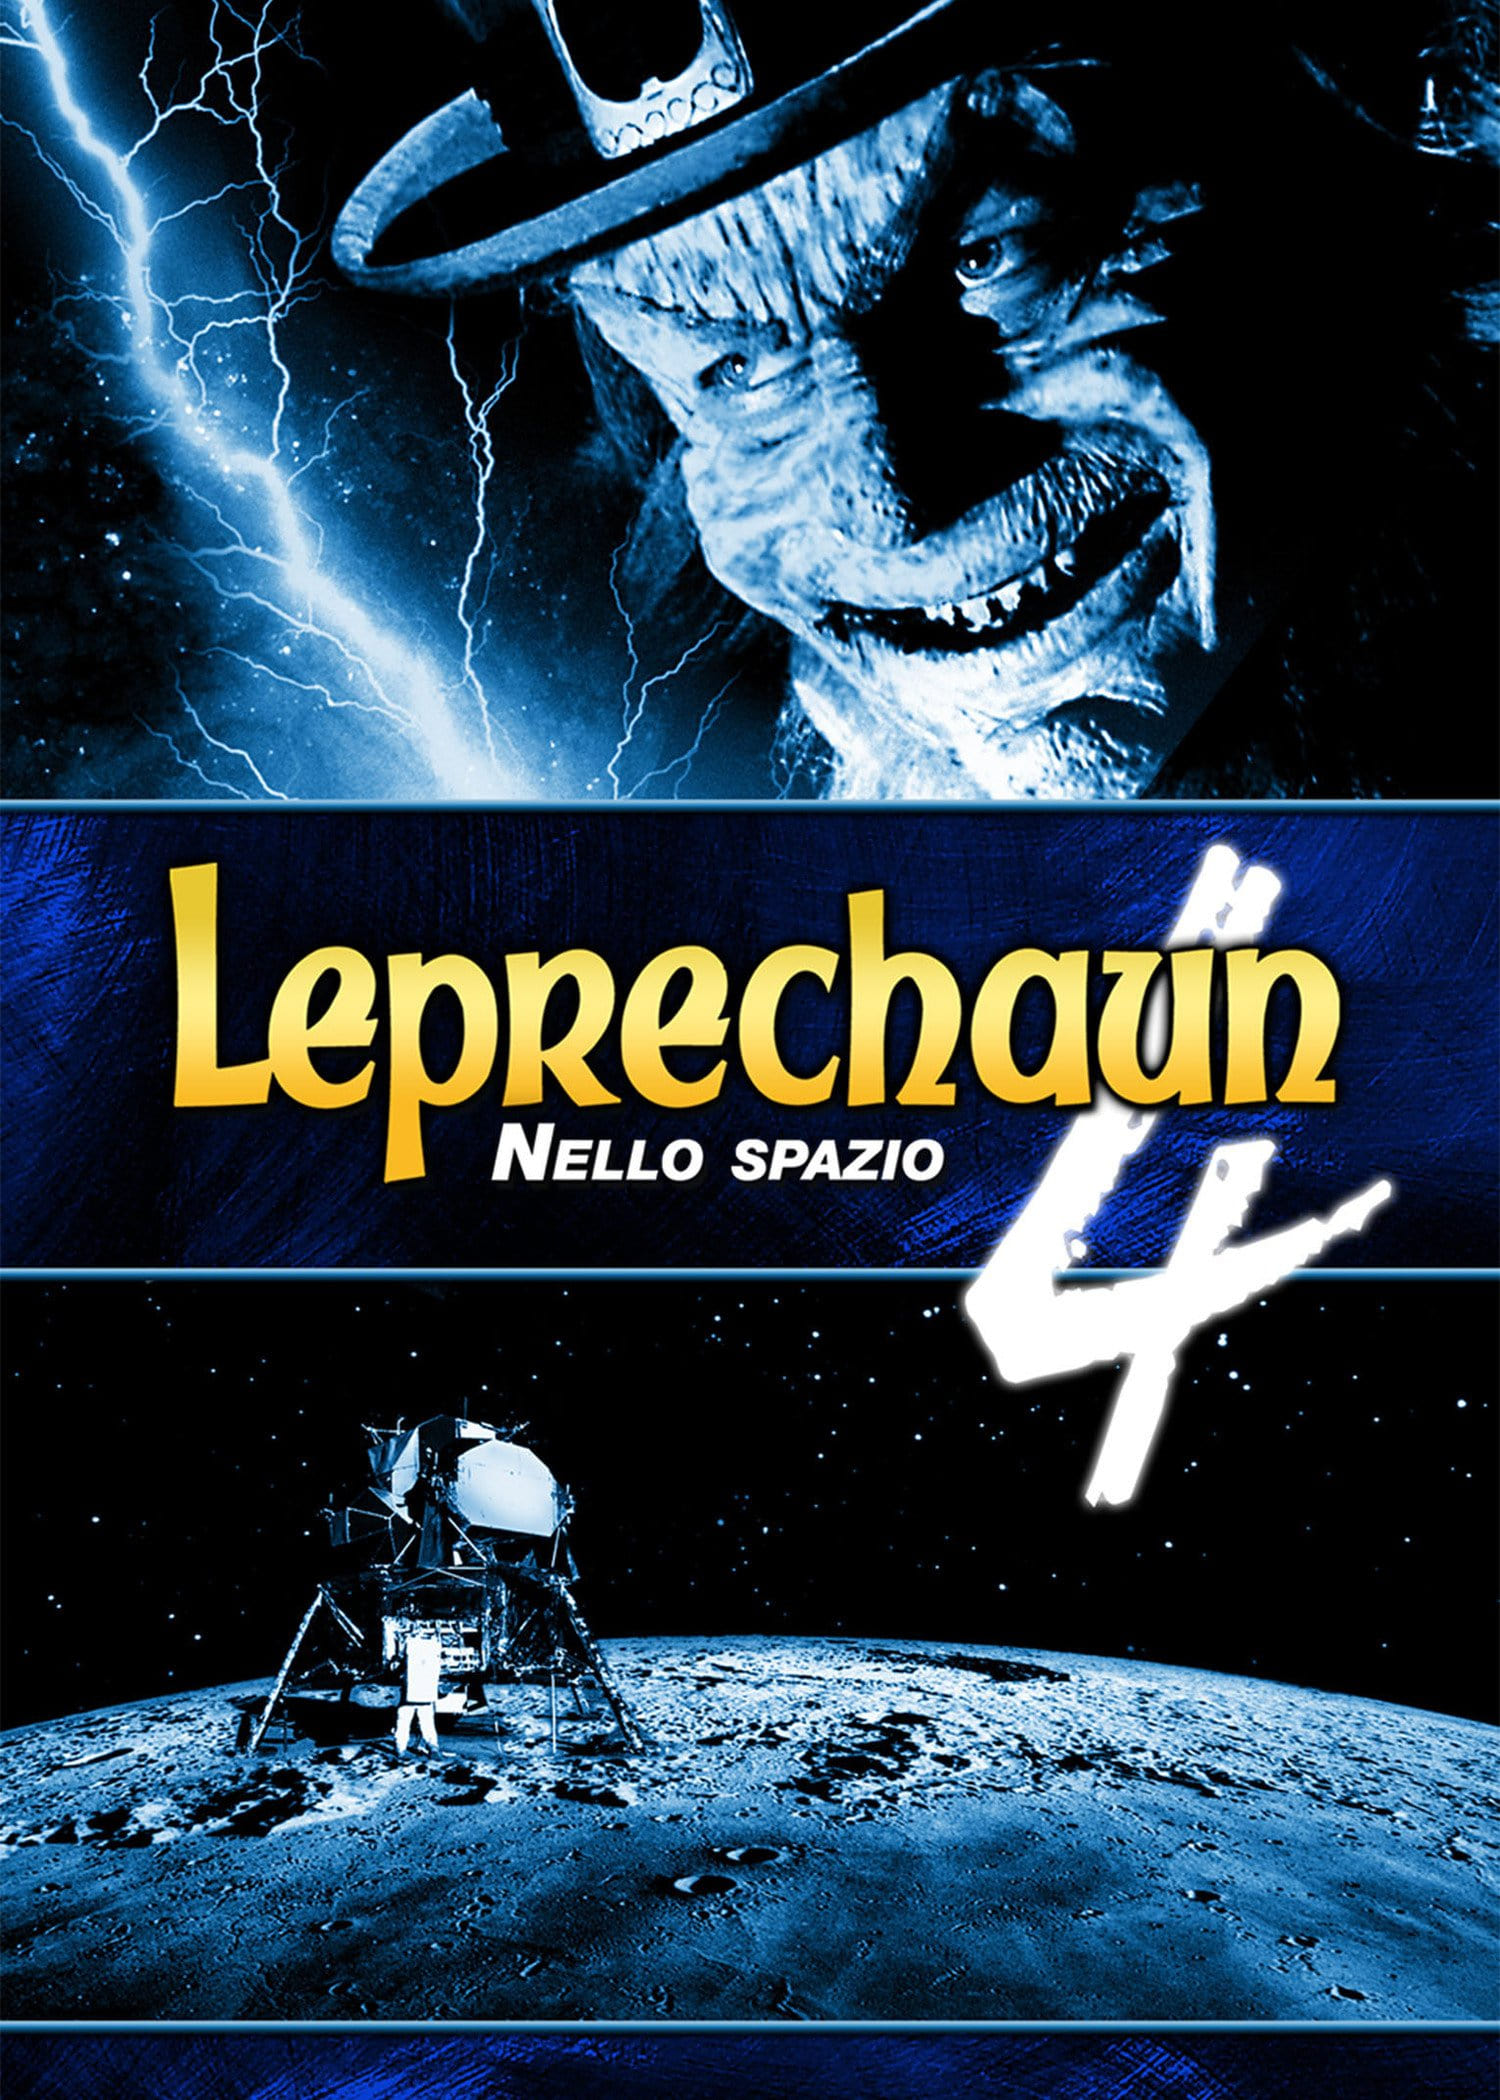 Leprechaun 4 - Nello spazio film